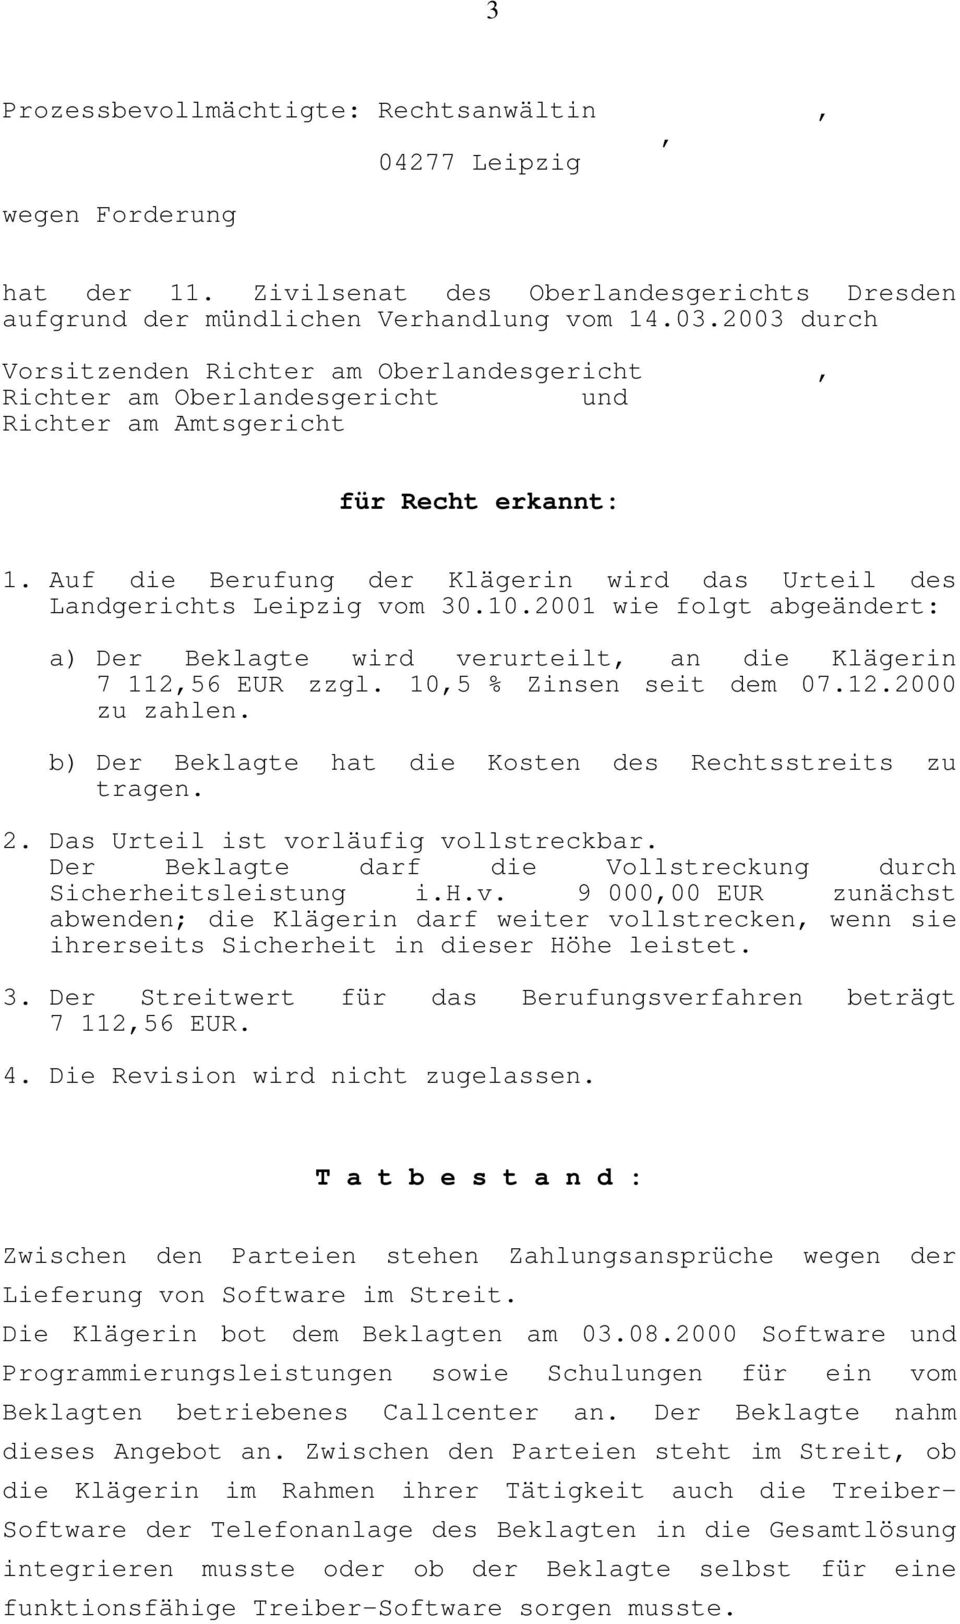 Auf die Berufung der Klägerin wird das Urteil des Landgerichts Leipzig vom 30.10.2001 wie folgt abgeändert: a) Der Beklagte wird verurteilt an die Klägerin 7 11256 EUR zzgl. 105 % Zinsen seit dem 07.